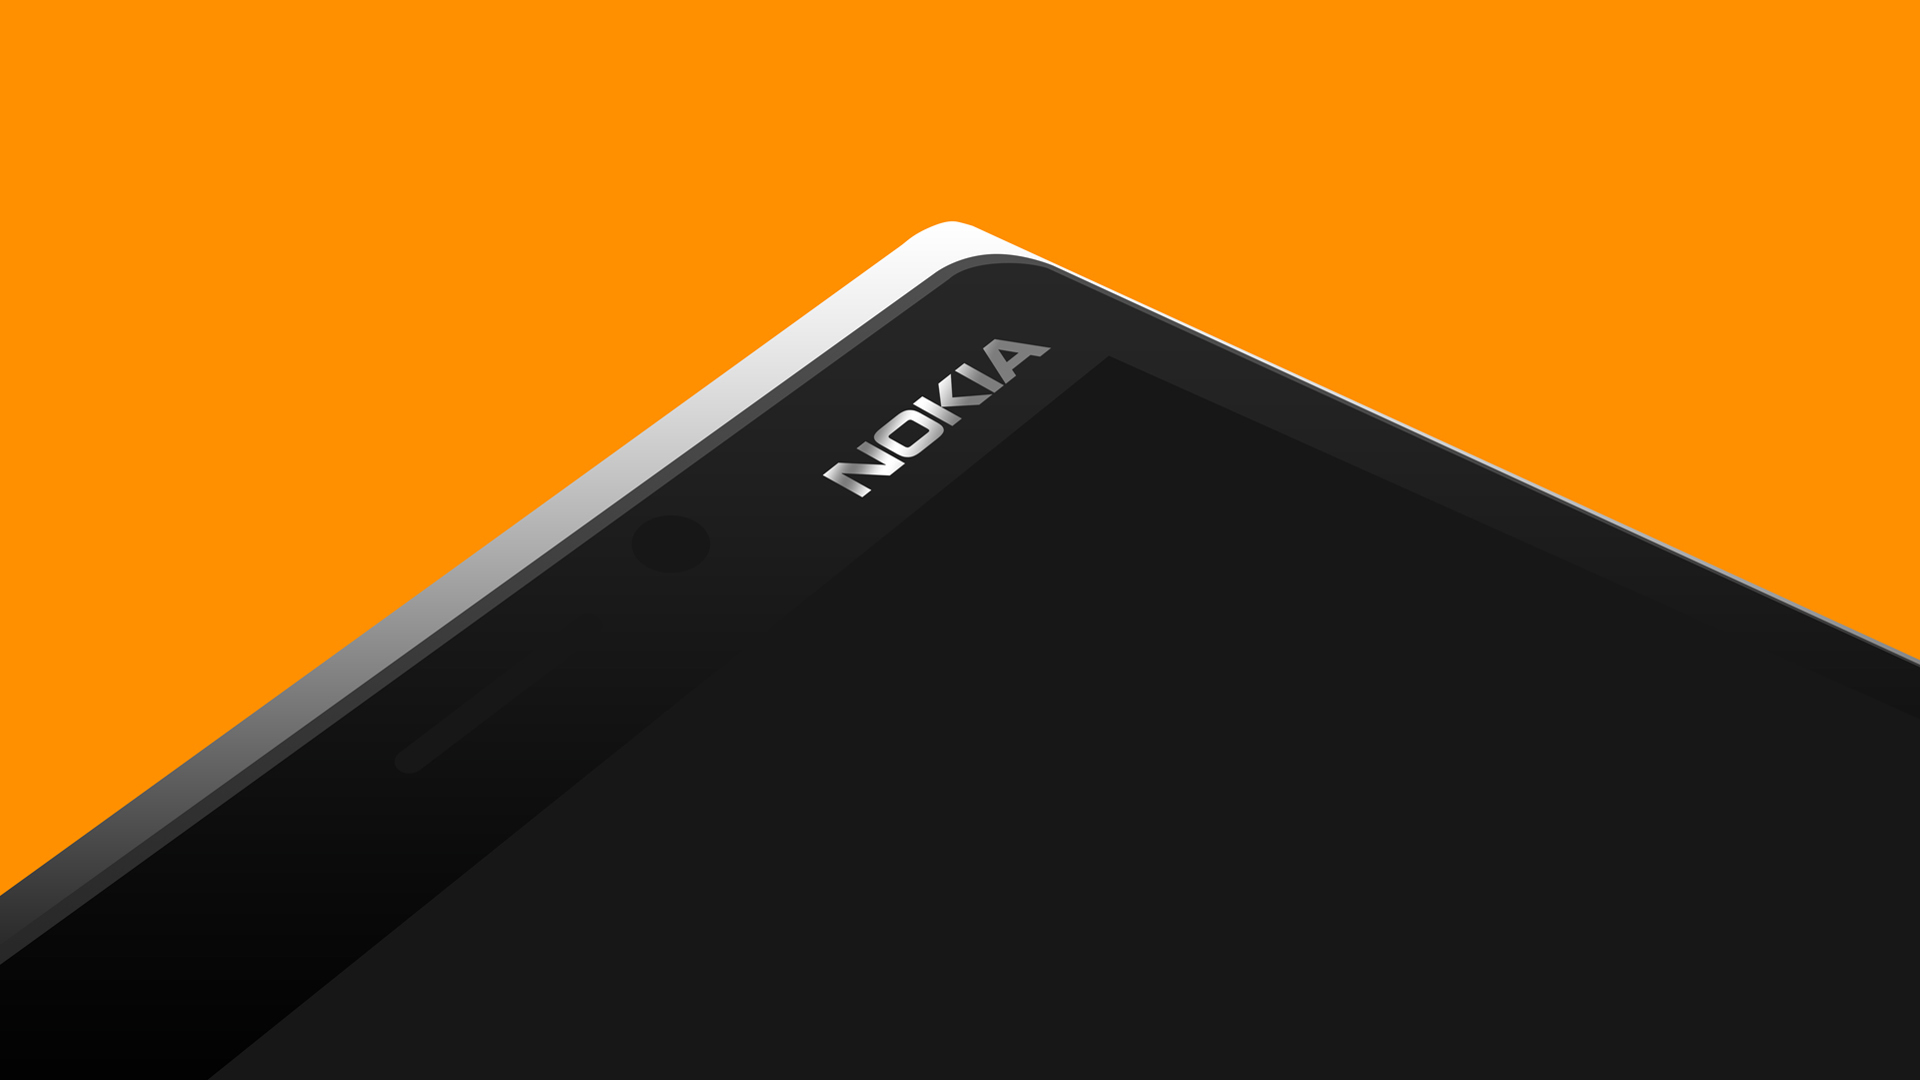 Nokia 9 PureView kommer att prissättas till 600 euro 3 